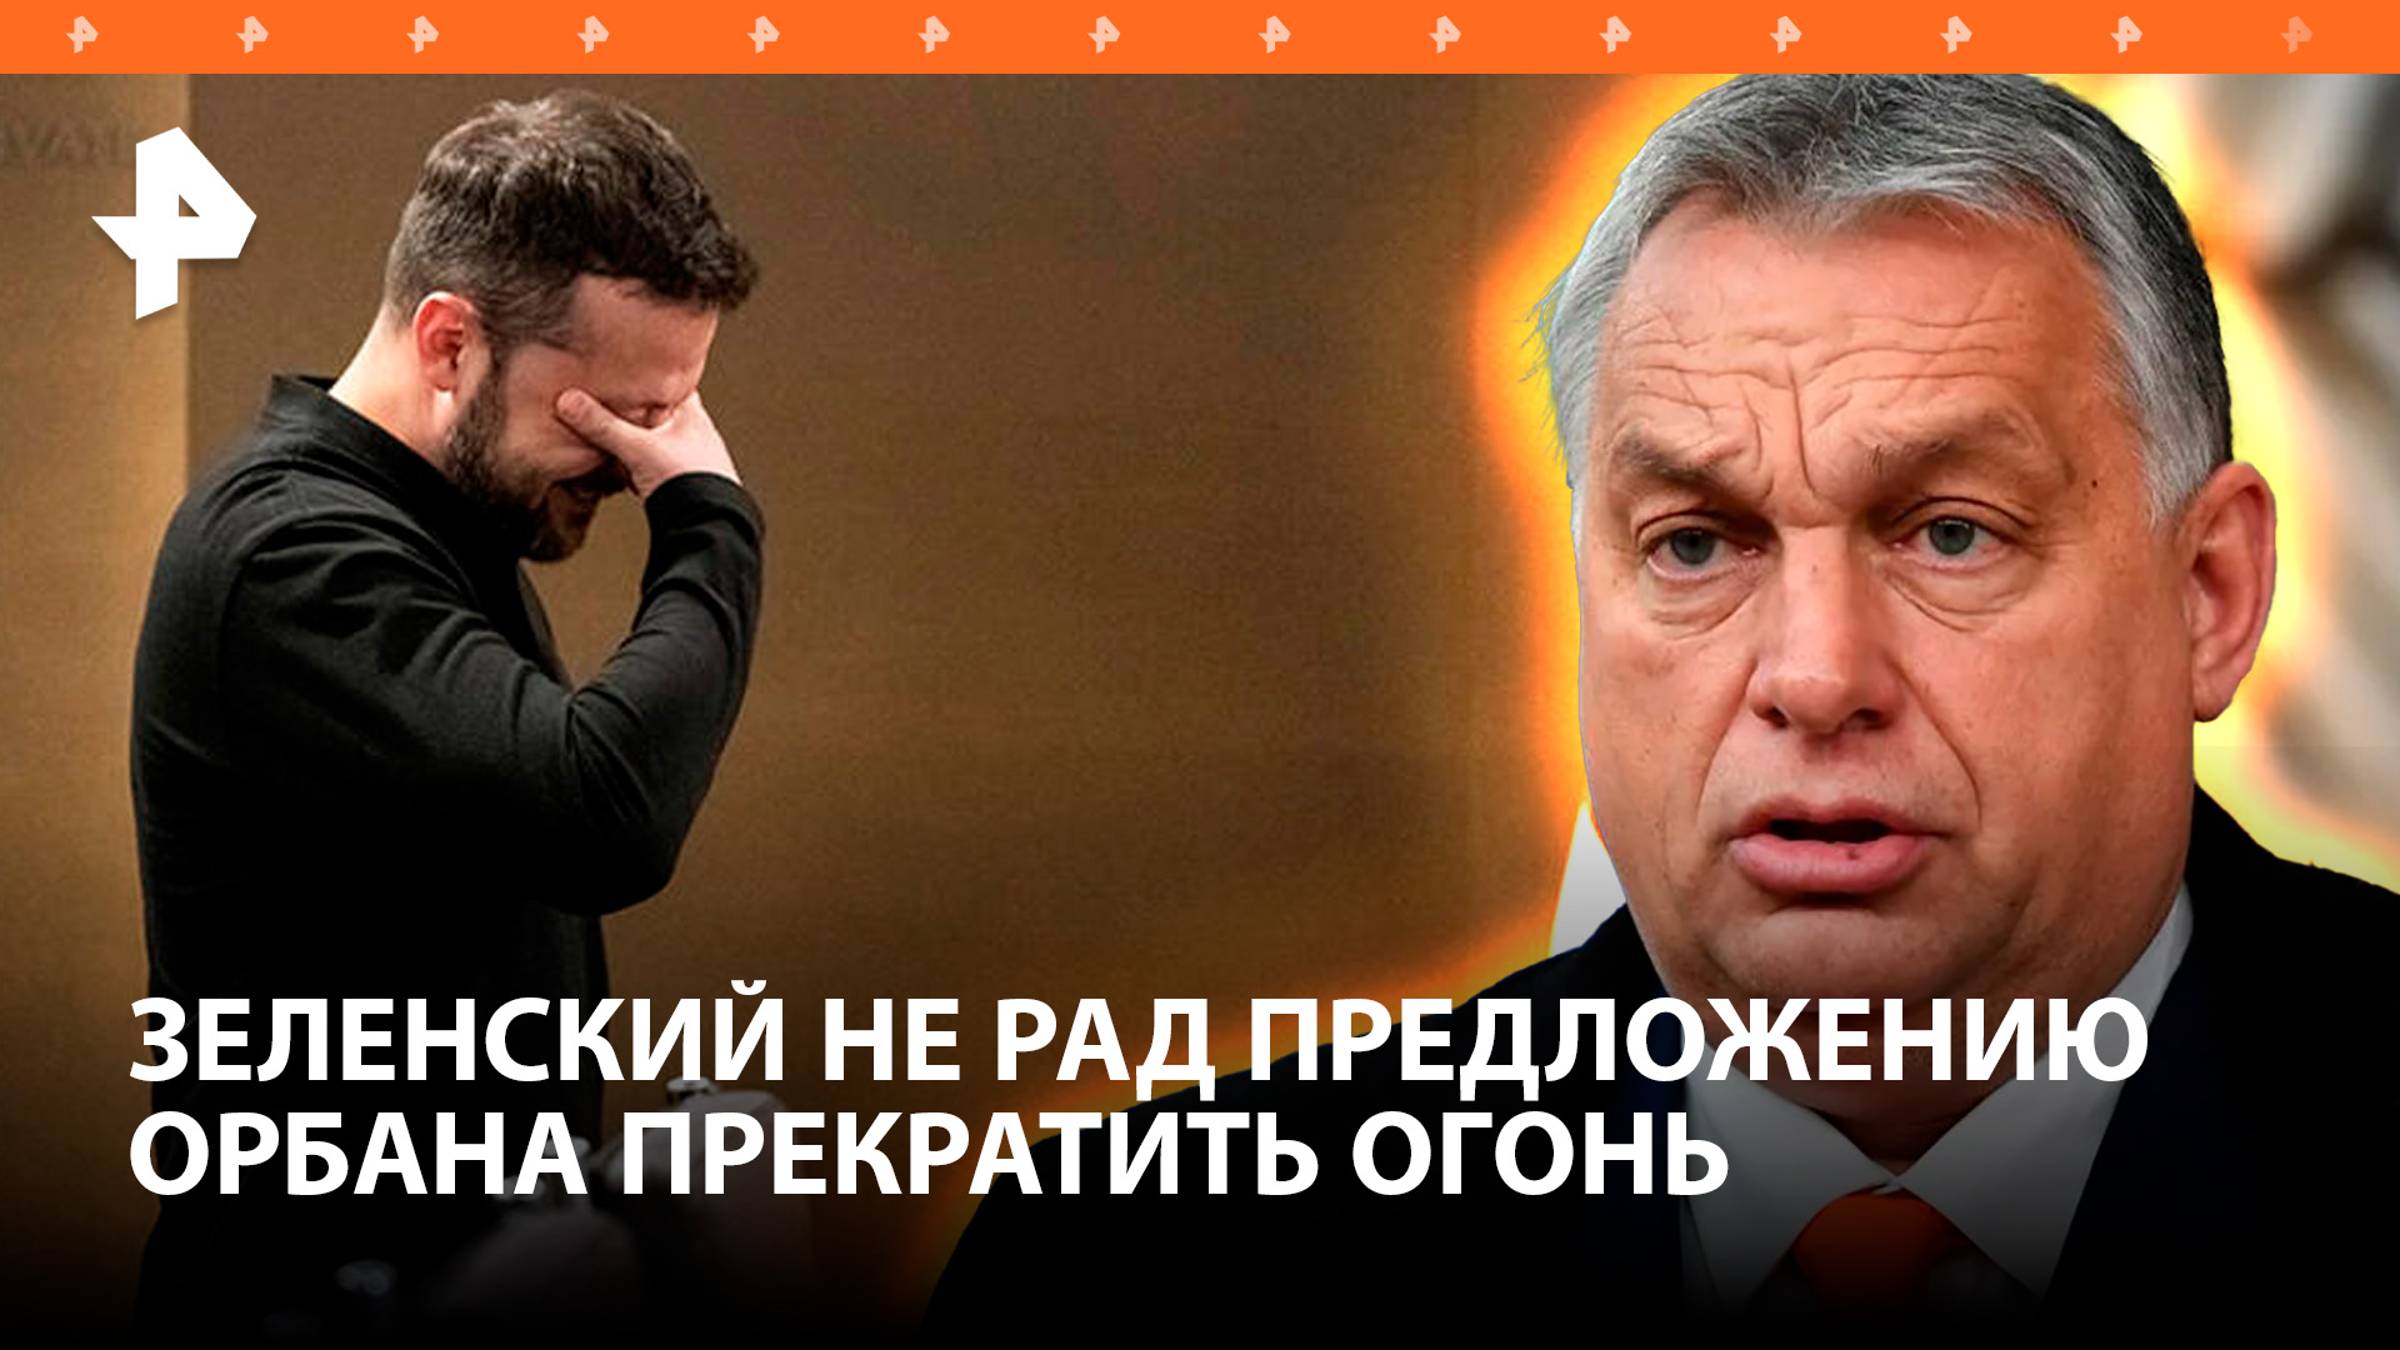 Зеленский оказался не в восторге от предложения Орбана прекратить огонь / РЕН Новости